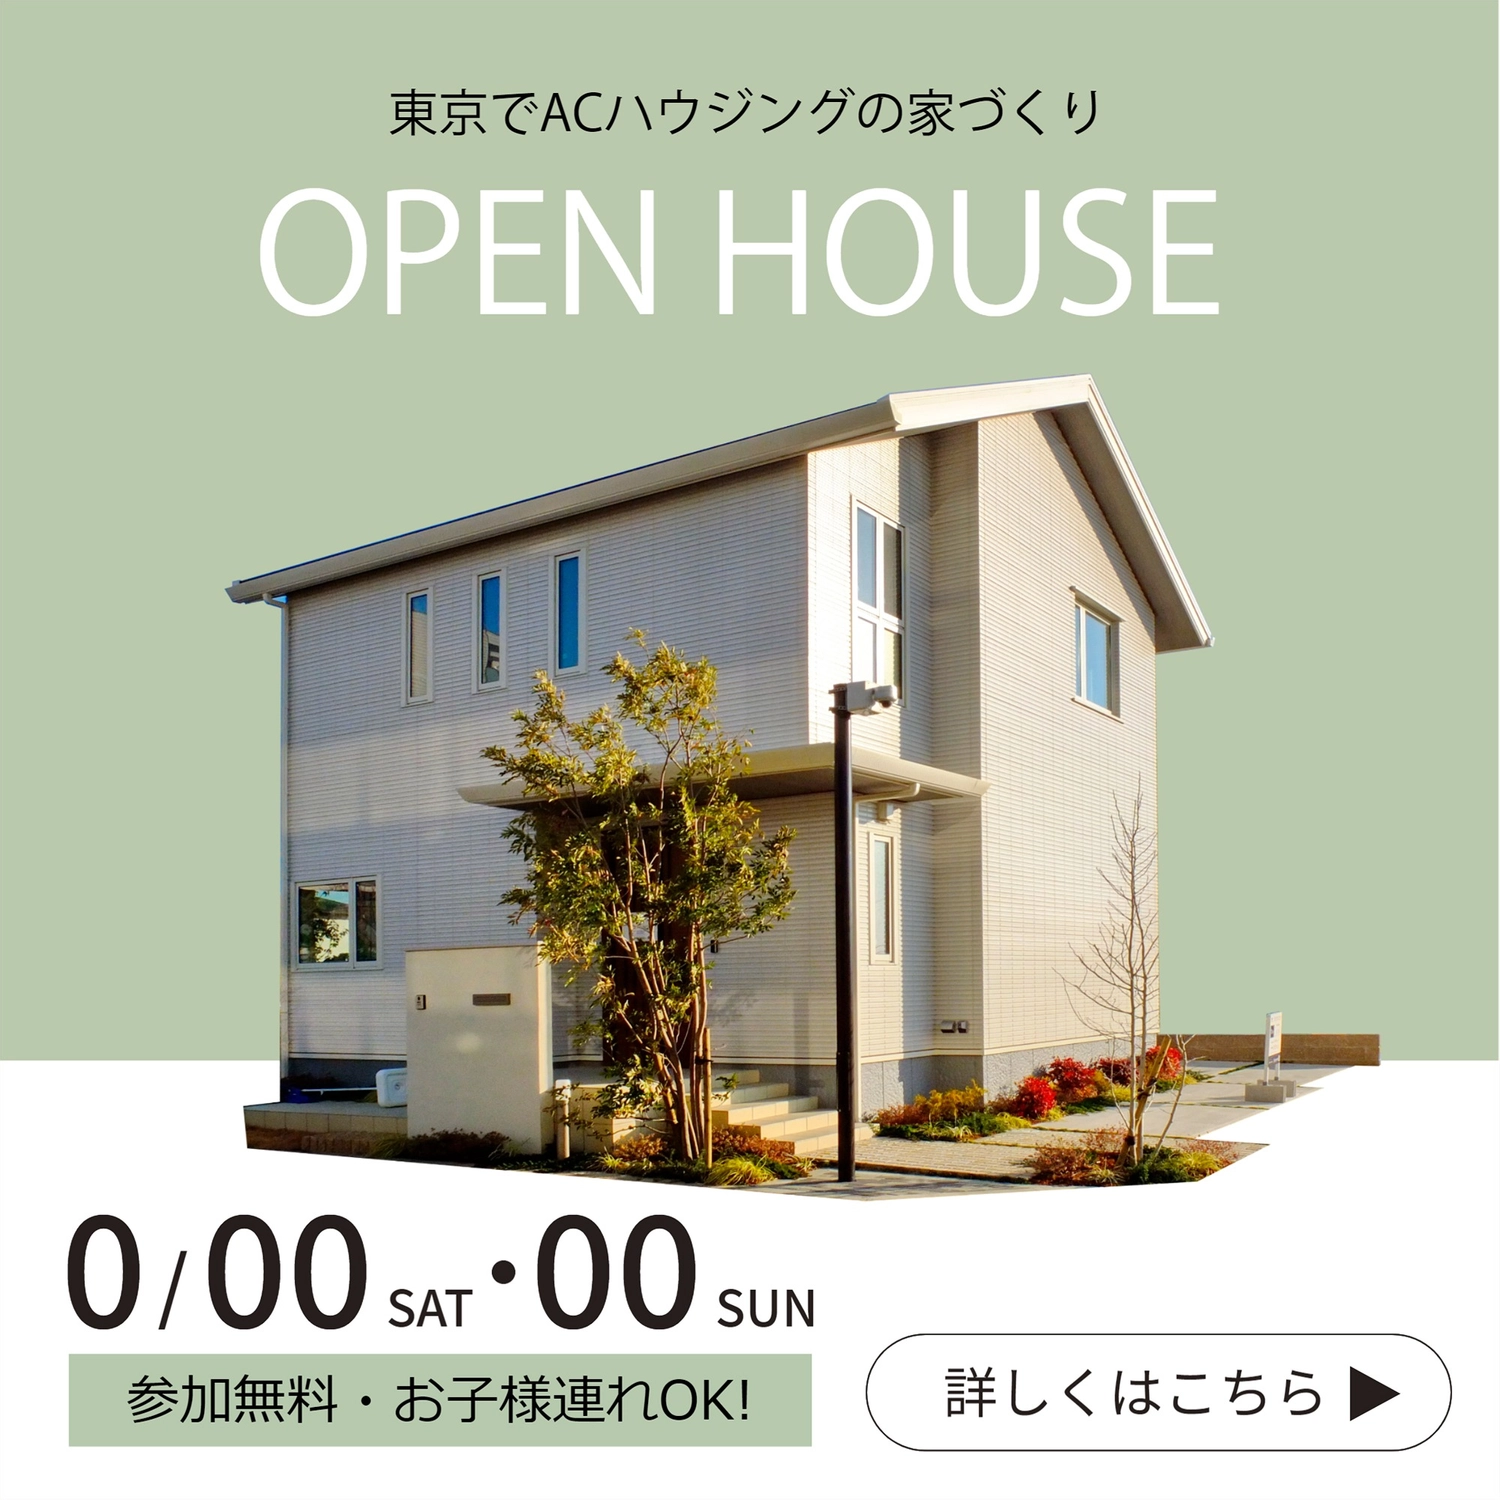 オープンハウス広告, Flyer, green, color background, Instagram Post template